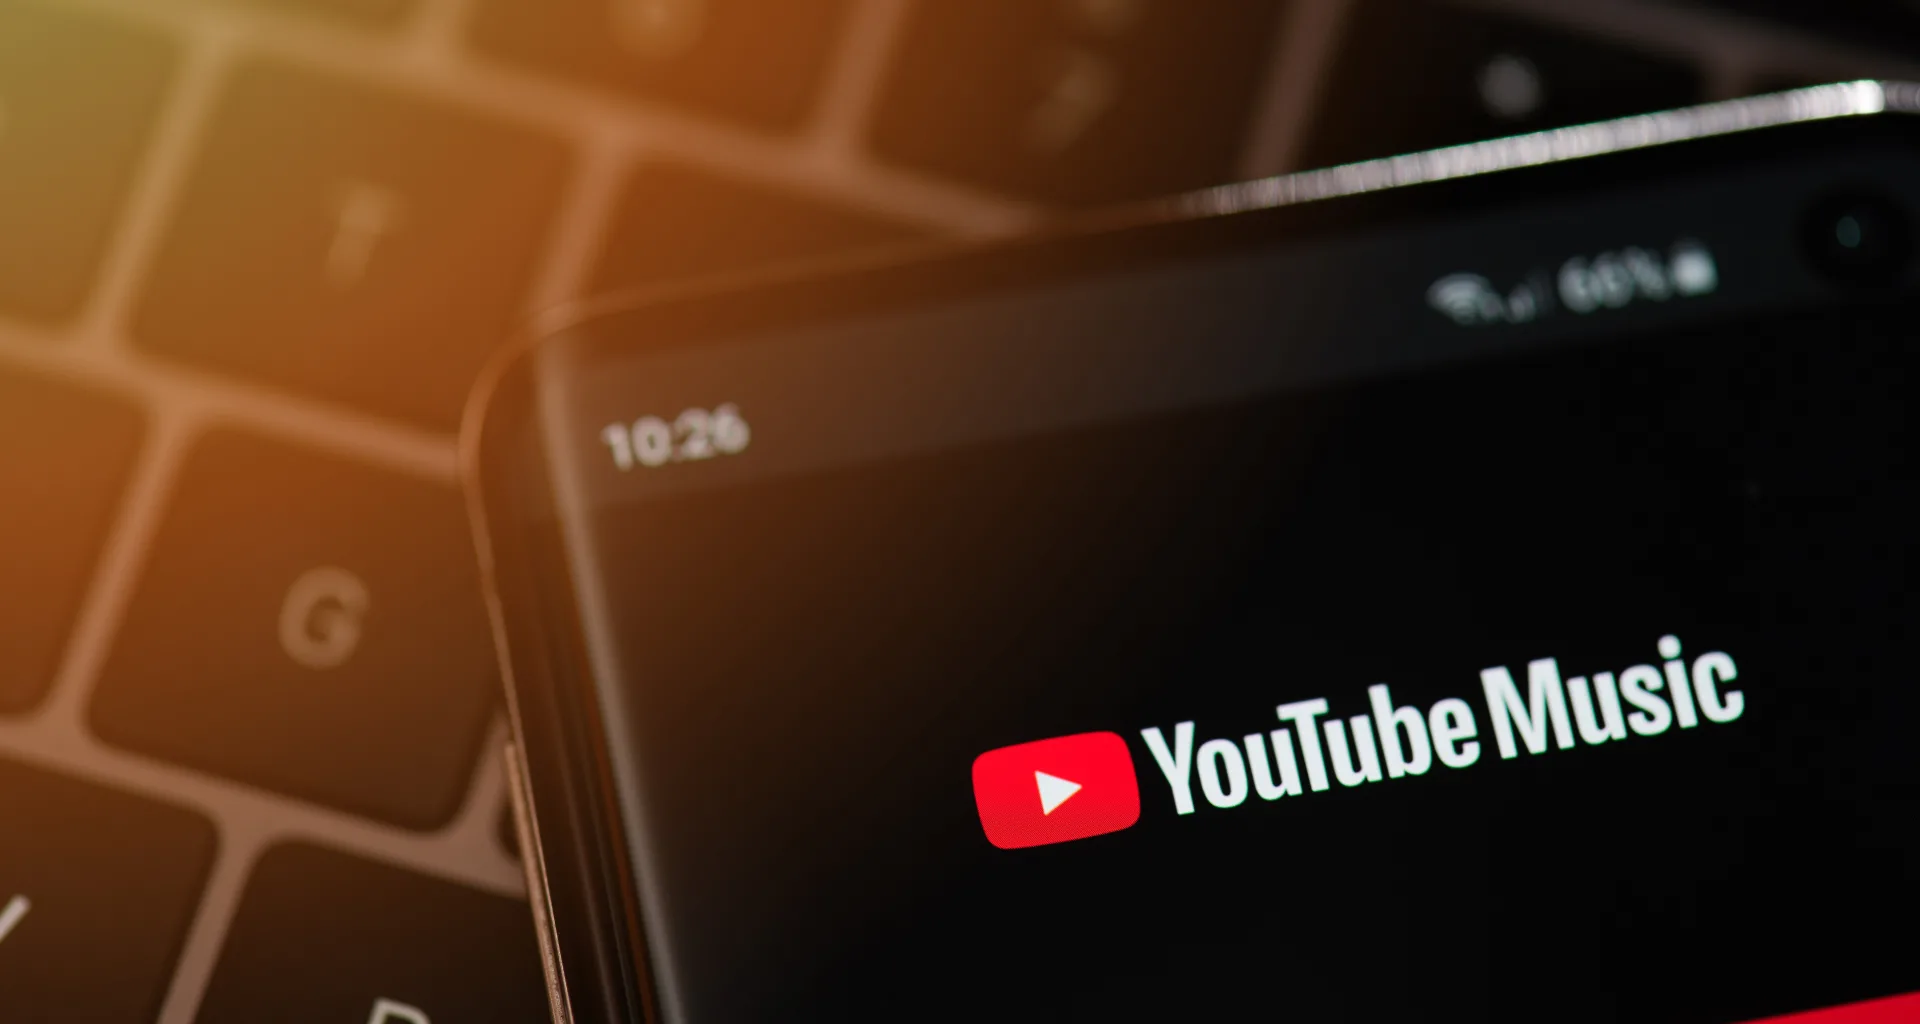 O youtube é a maior plataforma de compartilhamento de vídeos do mundo, com bilhões de usuários ativos mensais e uma imensa quantidade de conteúdo disponível.